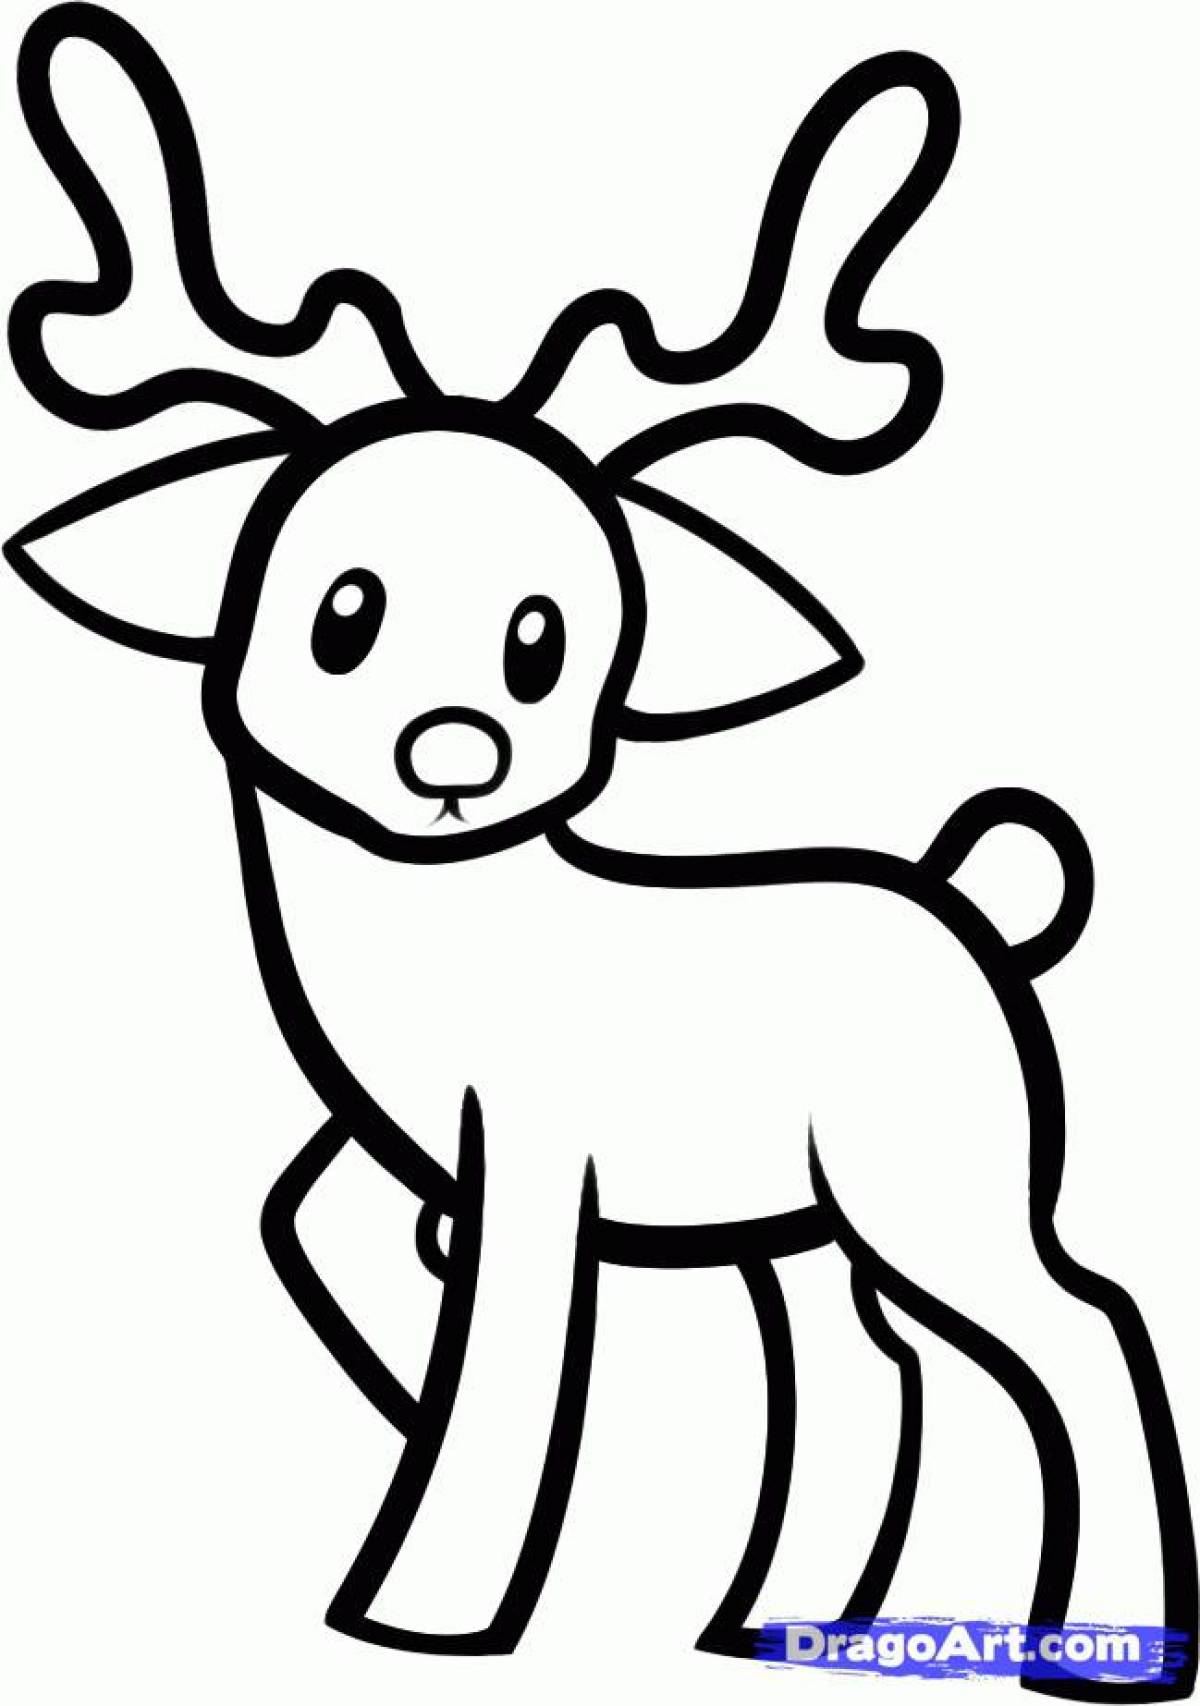 Fun coloring deer for kids